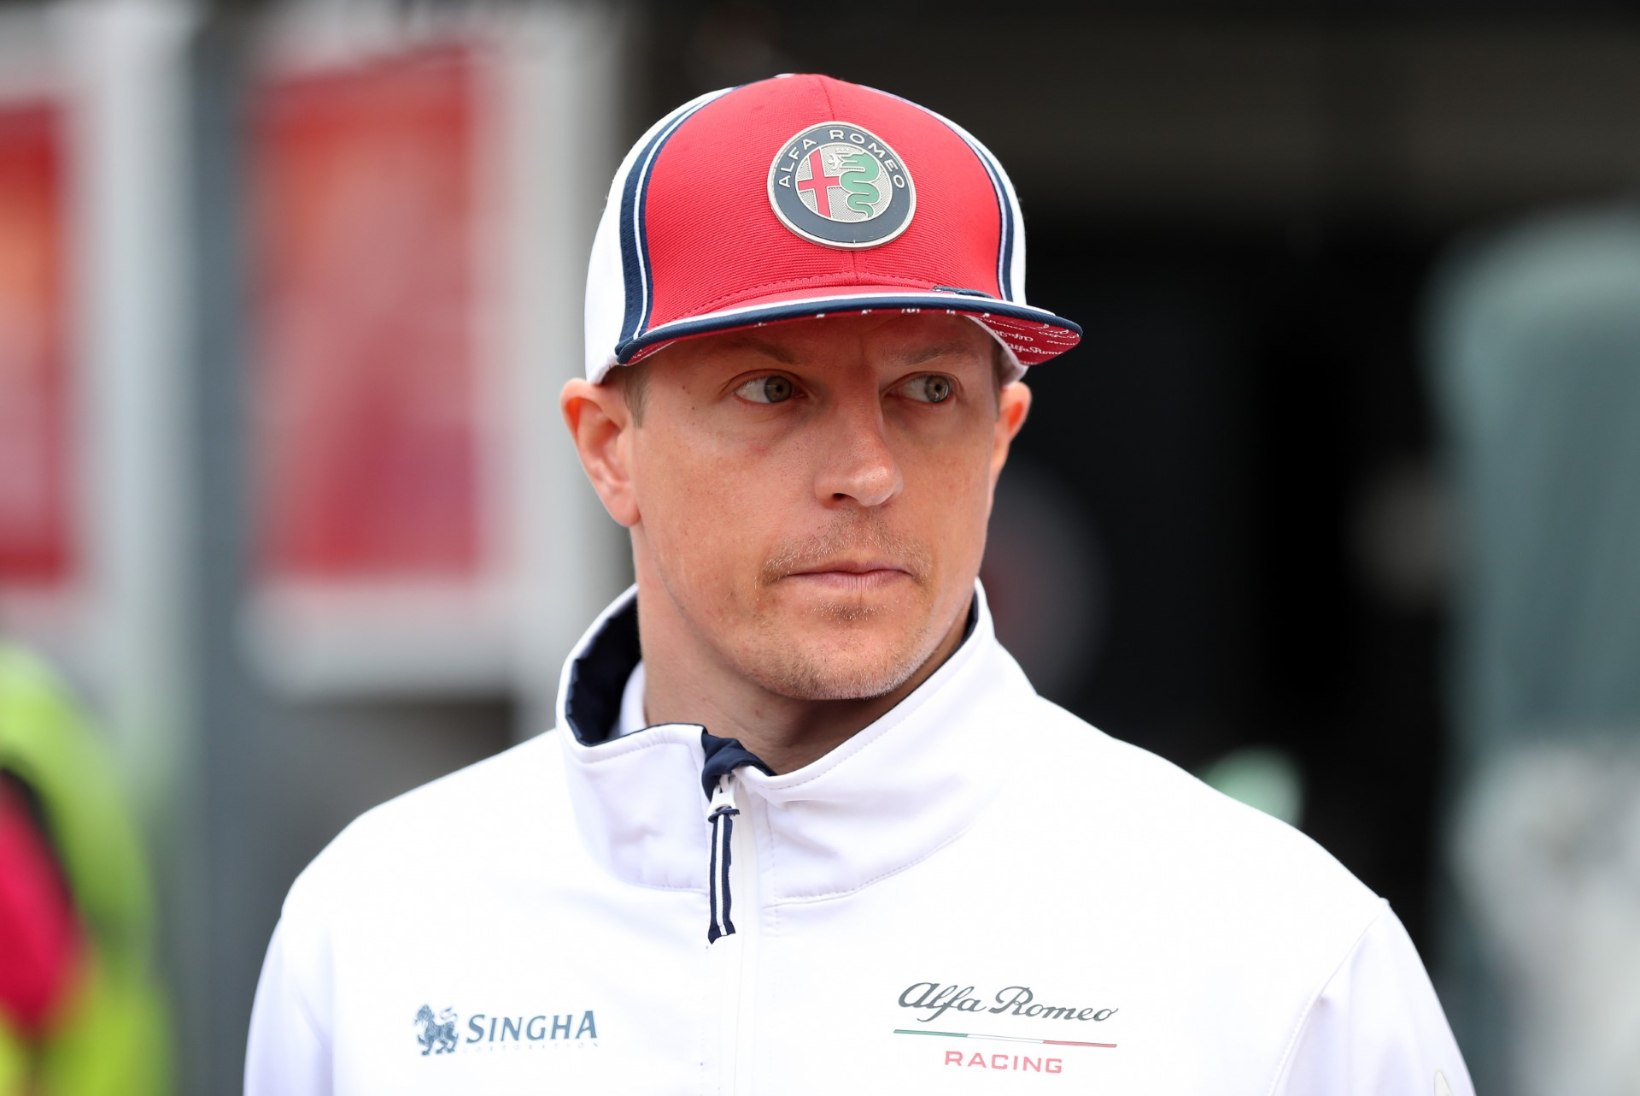 Kimi Räikkönen tähistab nädalavahetusel juubelit ja tõuseb vormelimaailma tõelisesse eliiti